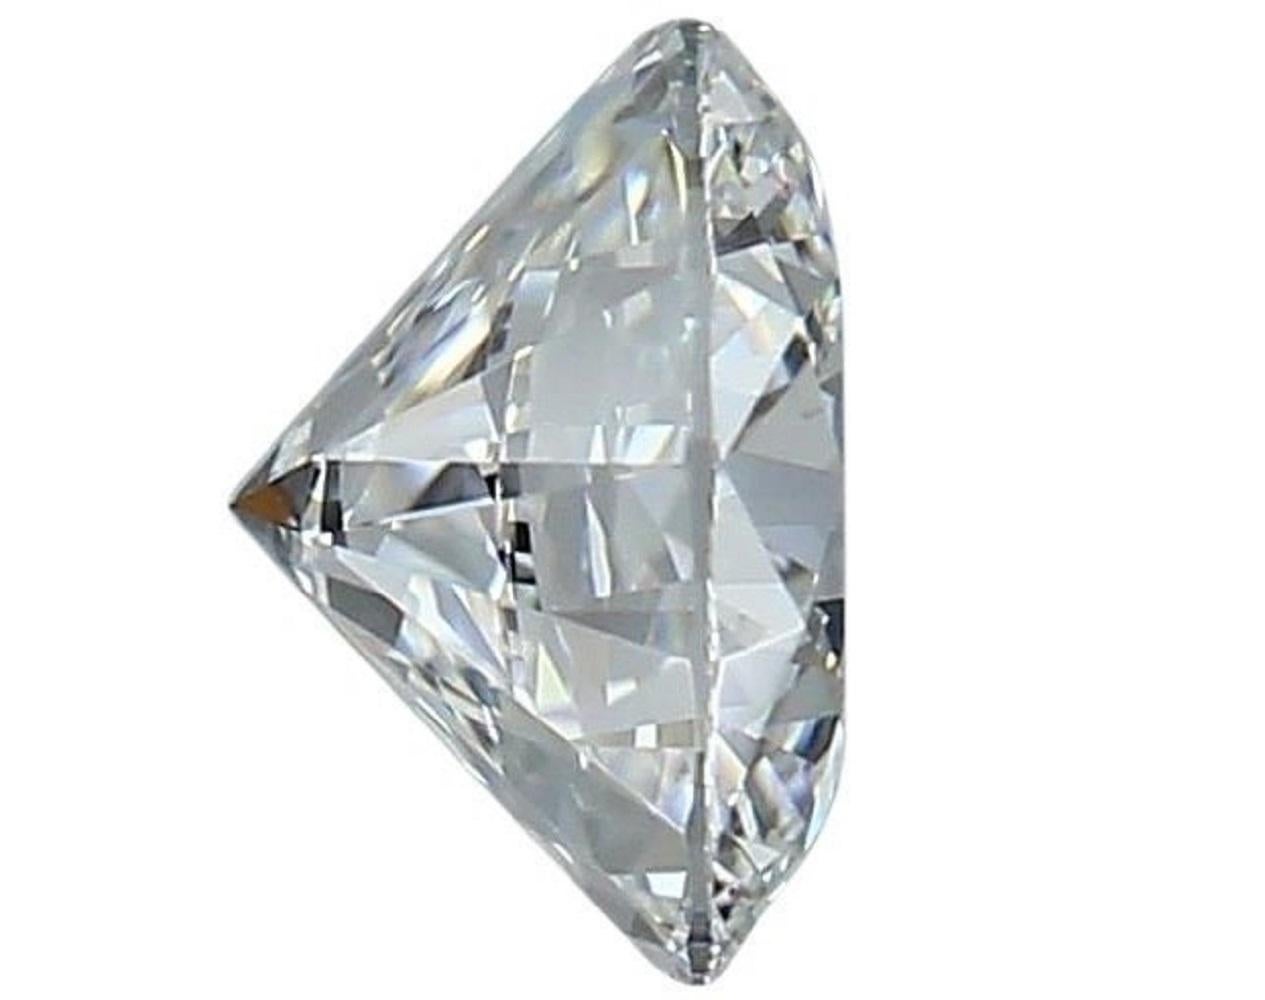 1 diamant brillant rond naturel étincelant de 0,9 carat G VVS1 avec une très bonne taille. Ce diamant est accompagné d'un certificat IGI et d'un numéro d'inscription au laser.

SKU : C-DSPV-167351-1
IGI 553248891